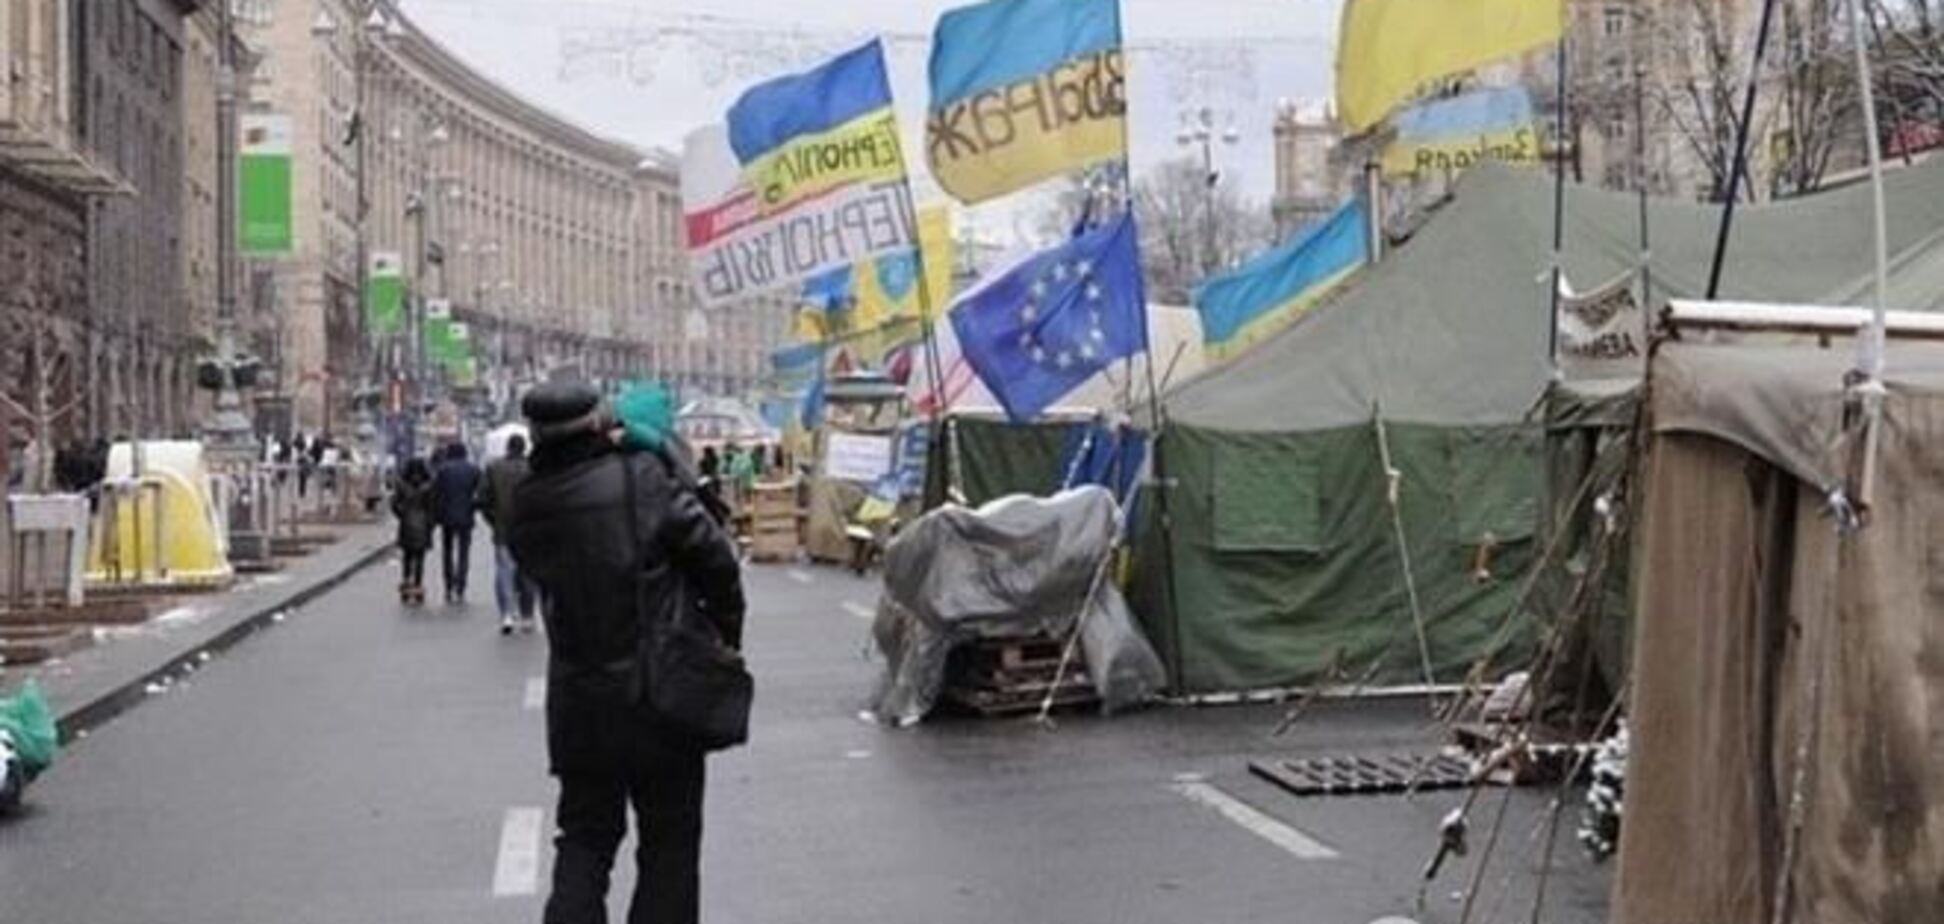 Политолог: лидерство на Евромайдане захватили радикалы